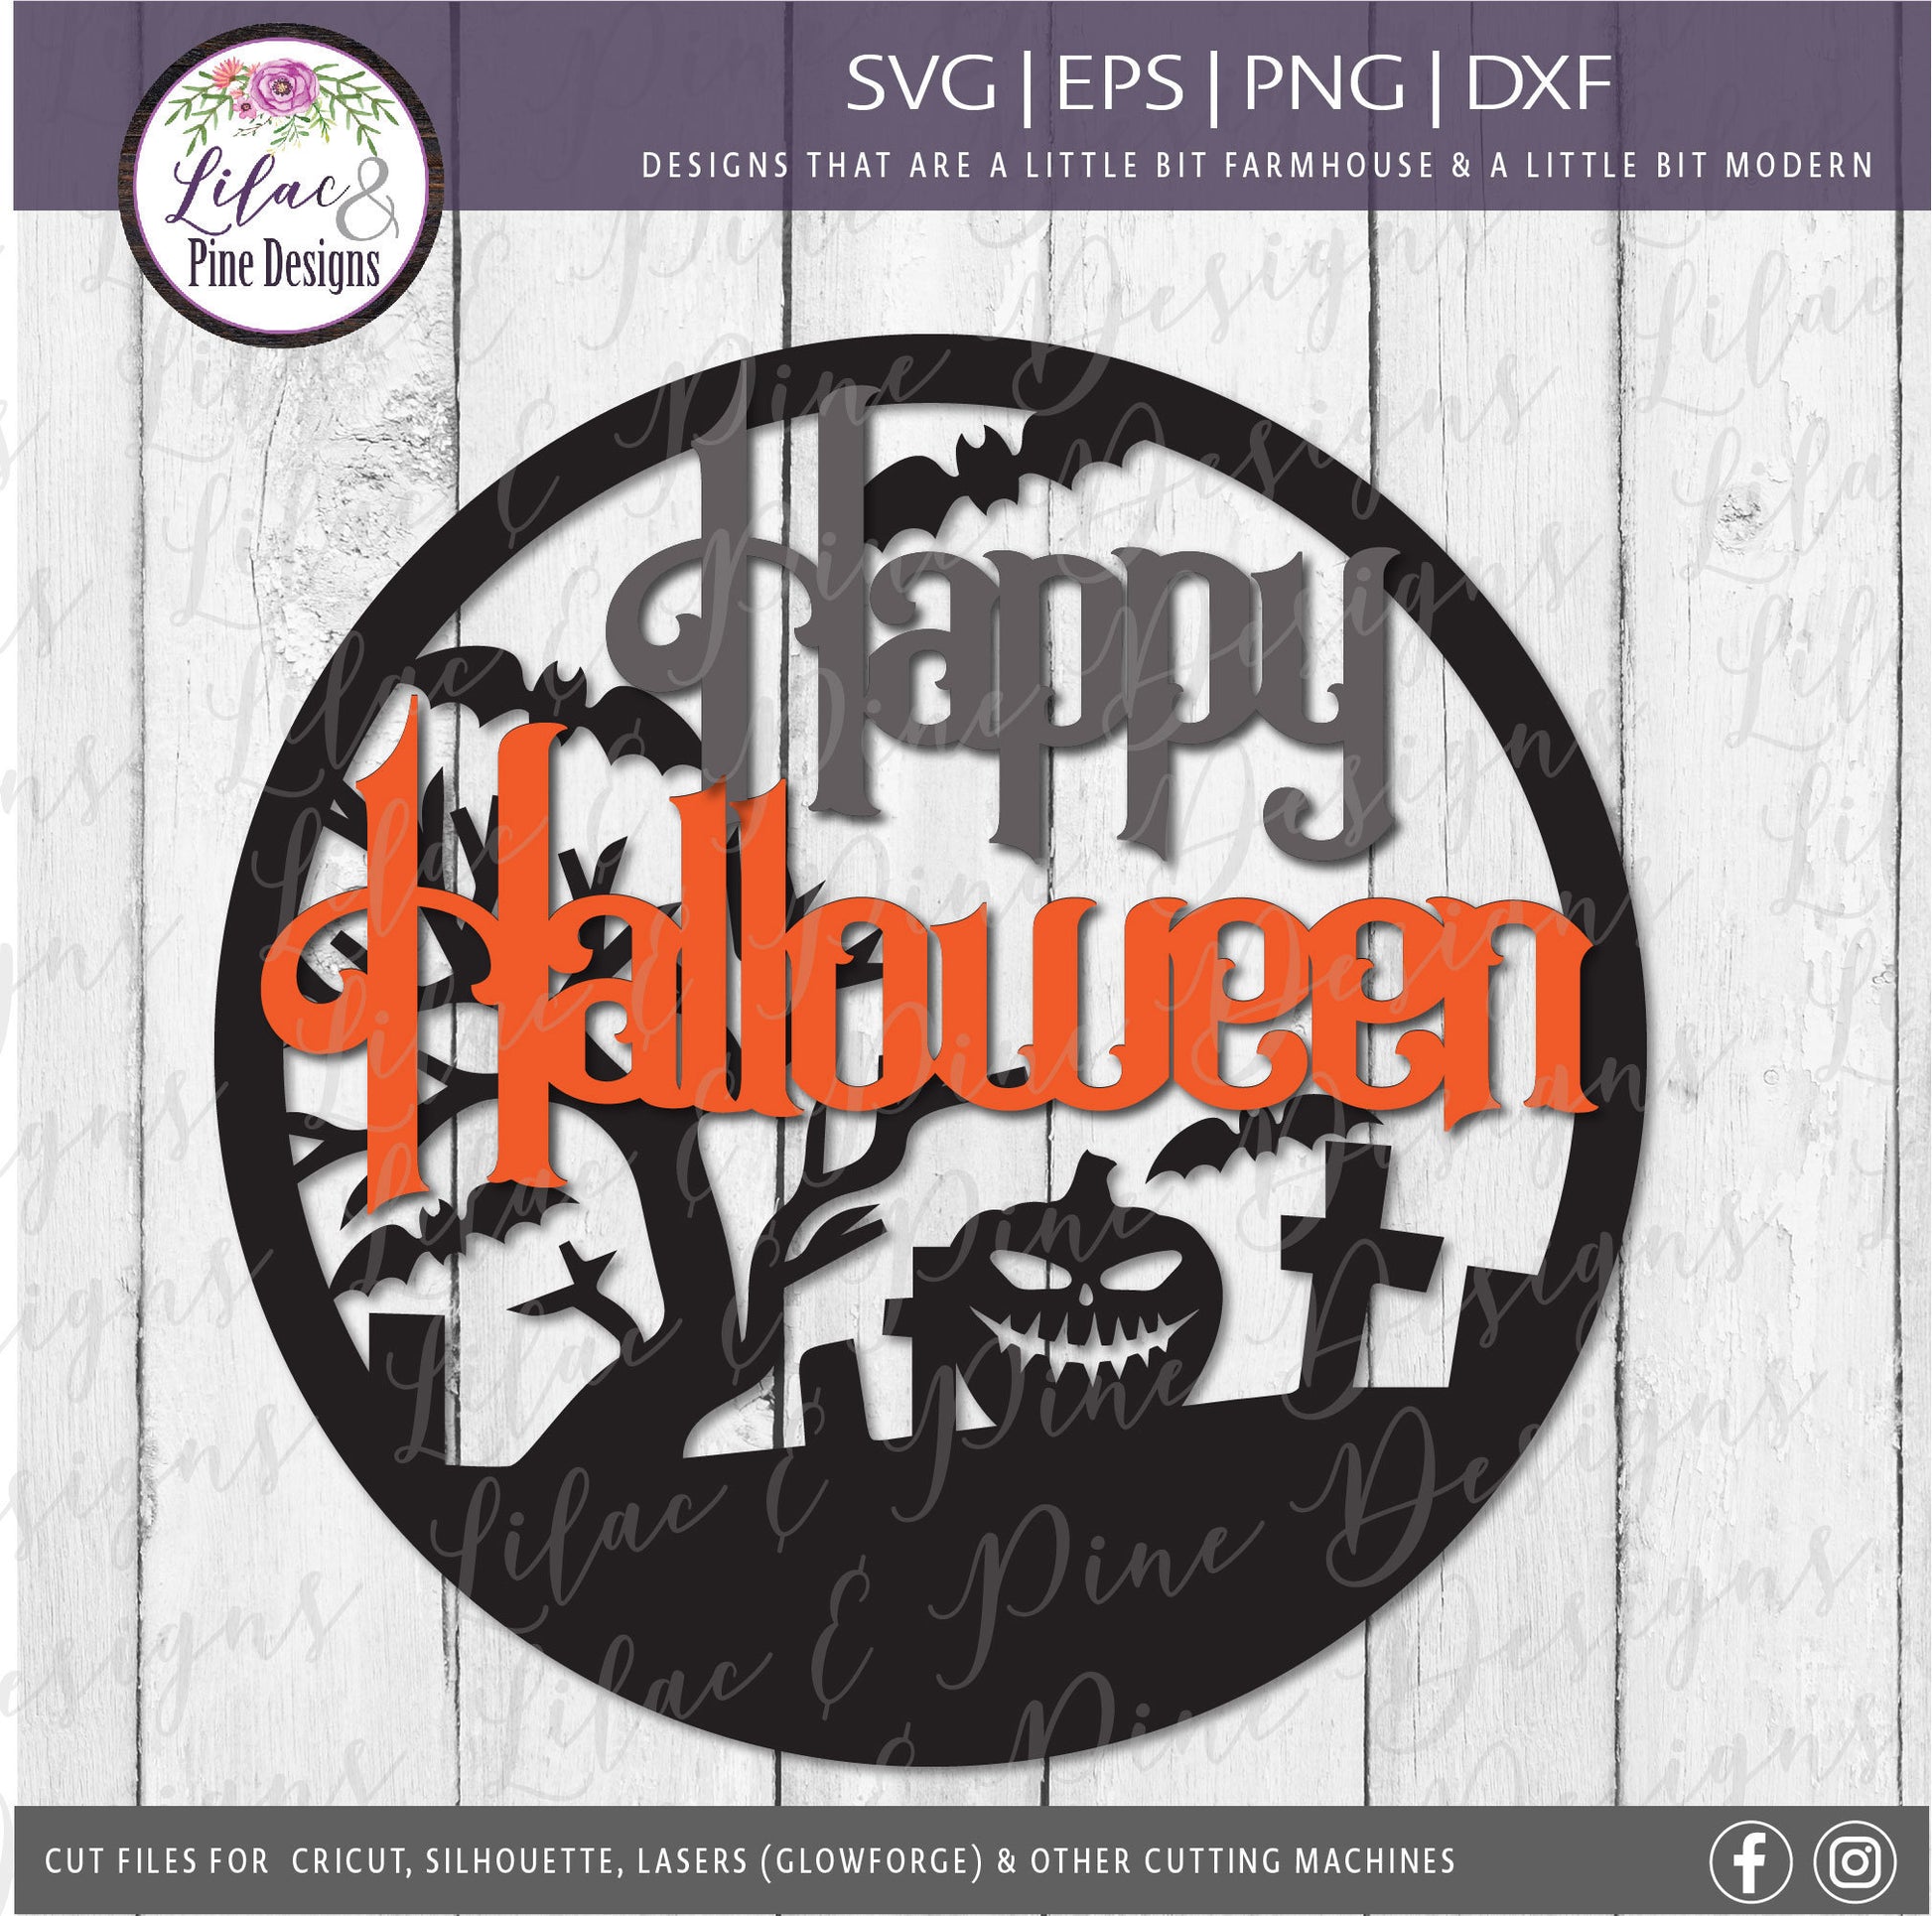 Happy Halloween SVG, Pumpkin Halloween sign SVG, Graveyard SVG, Halloween door decor, Spooky Halloween round door hanger, Glowforge laser